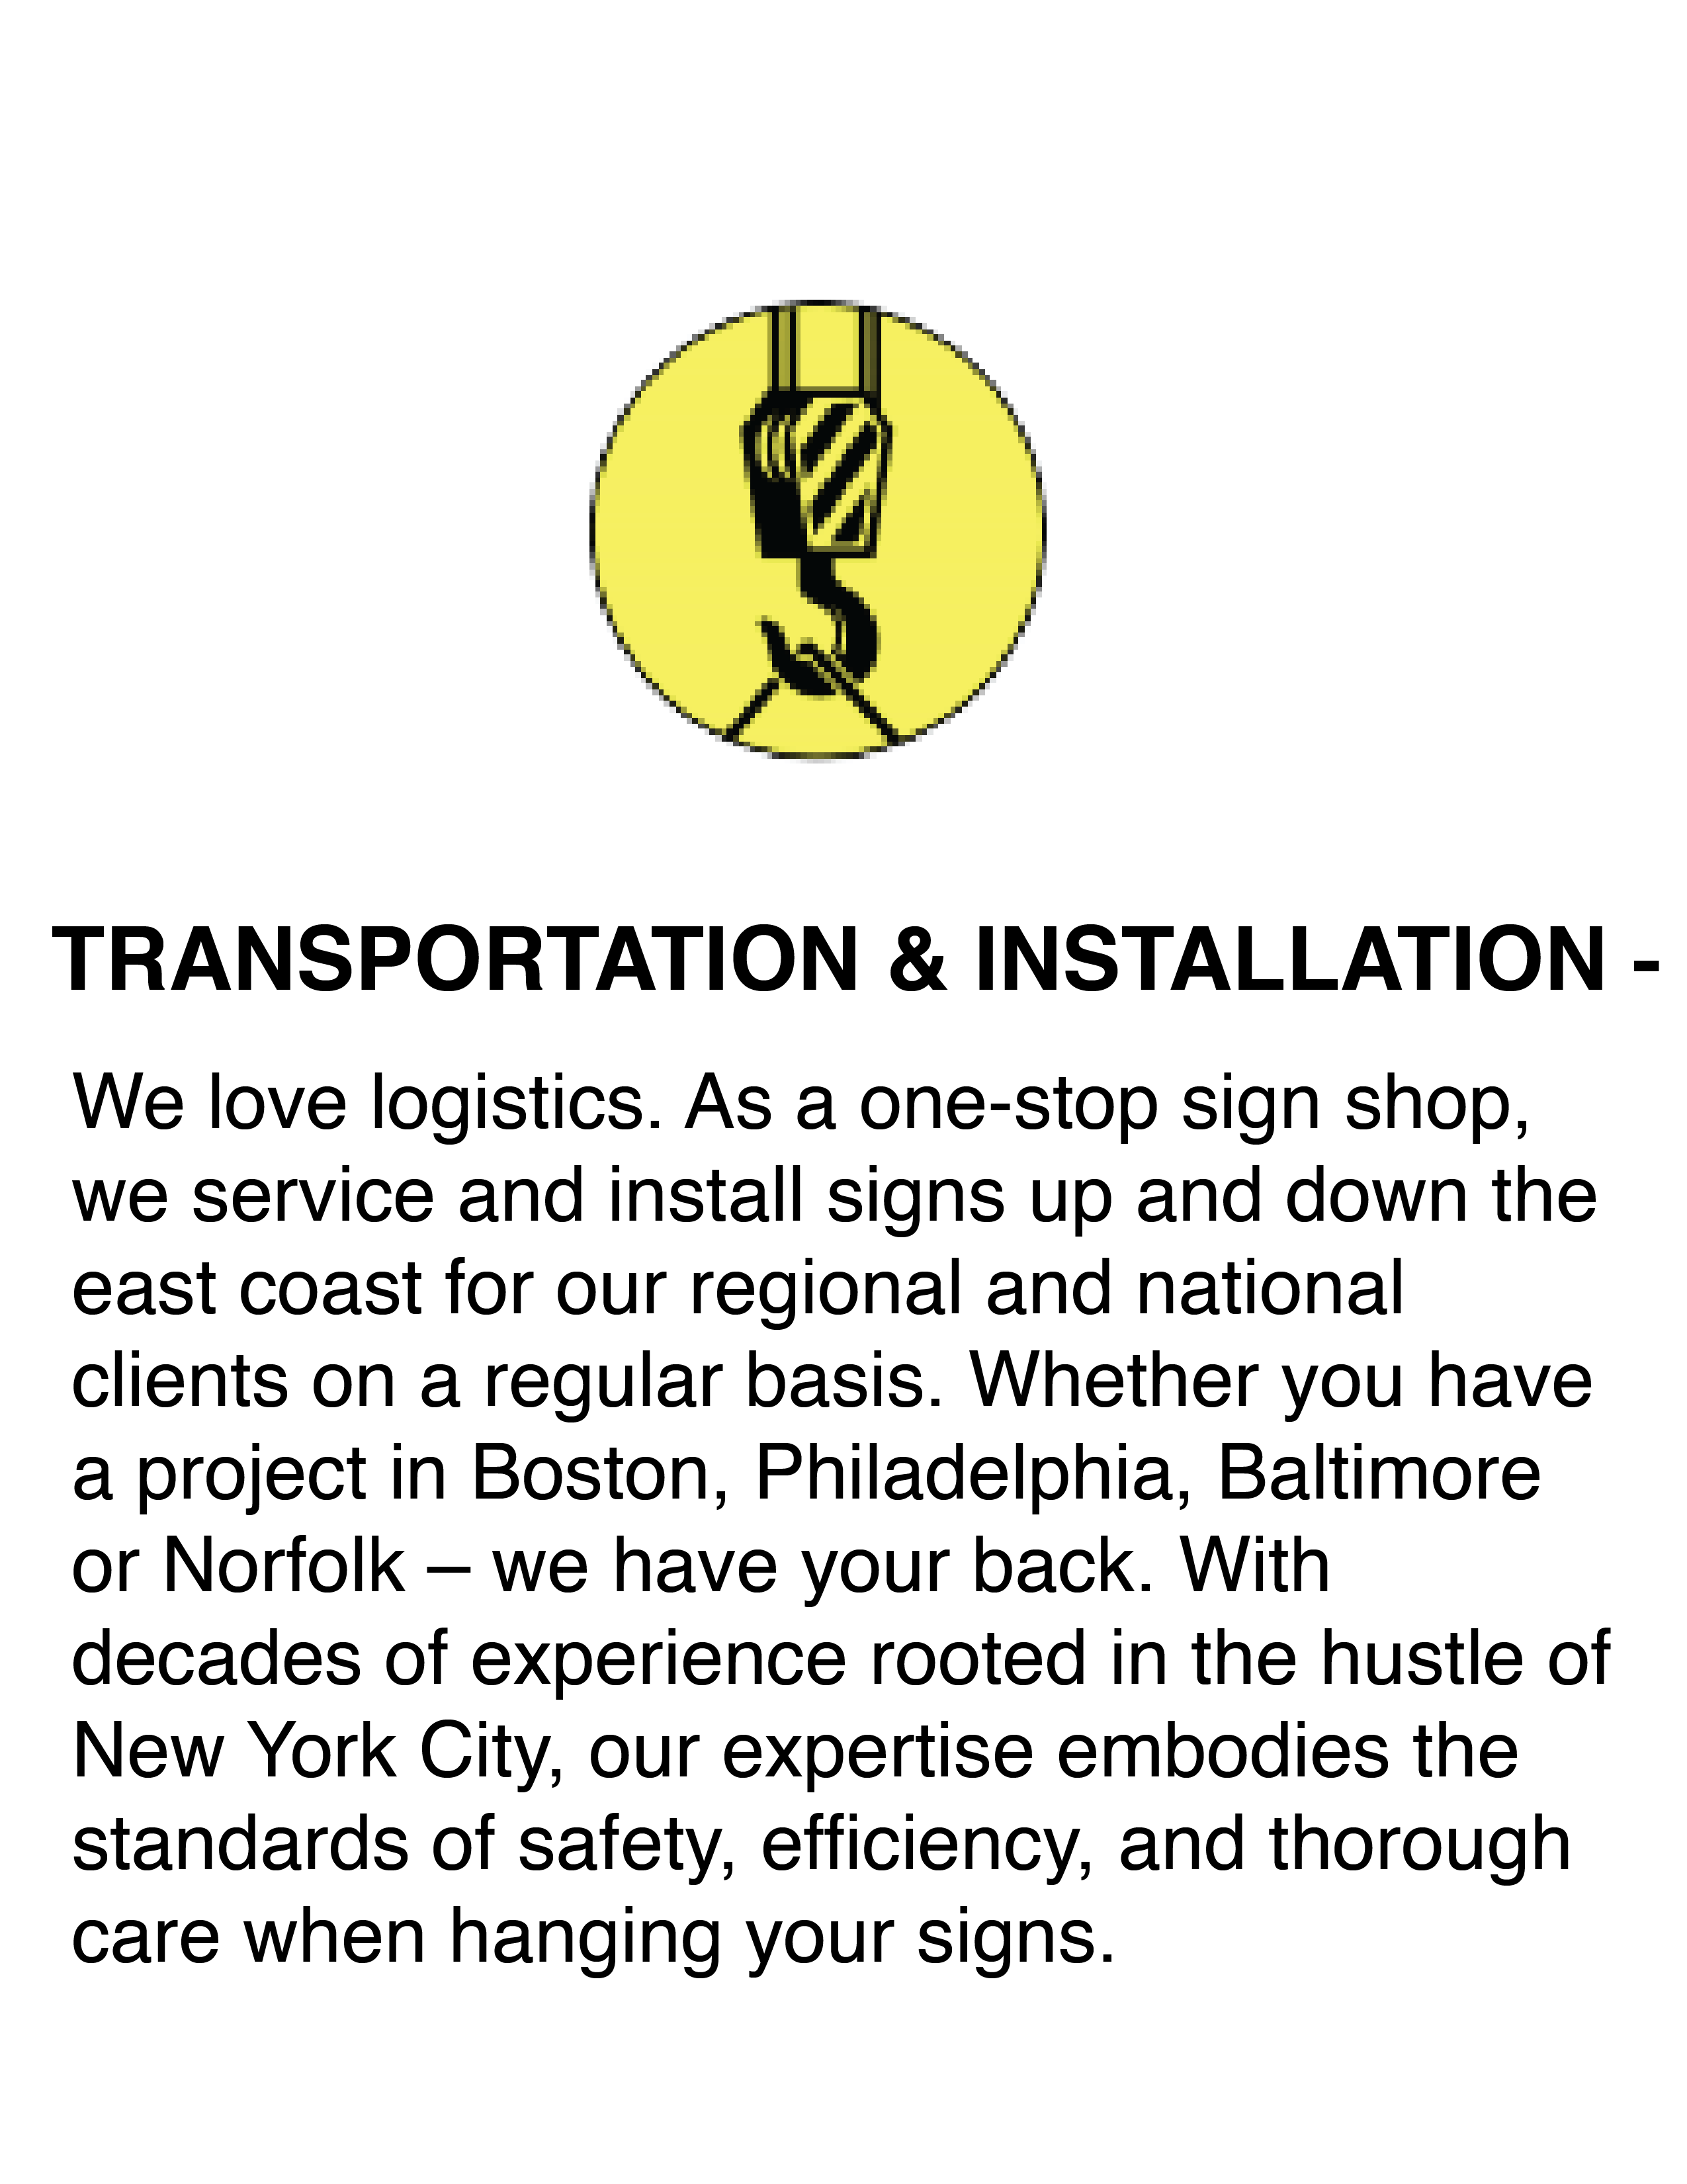 Transpor and Installation Sign